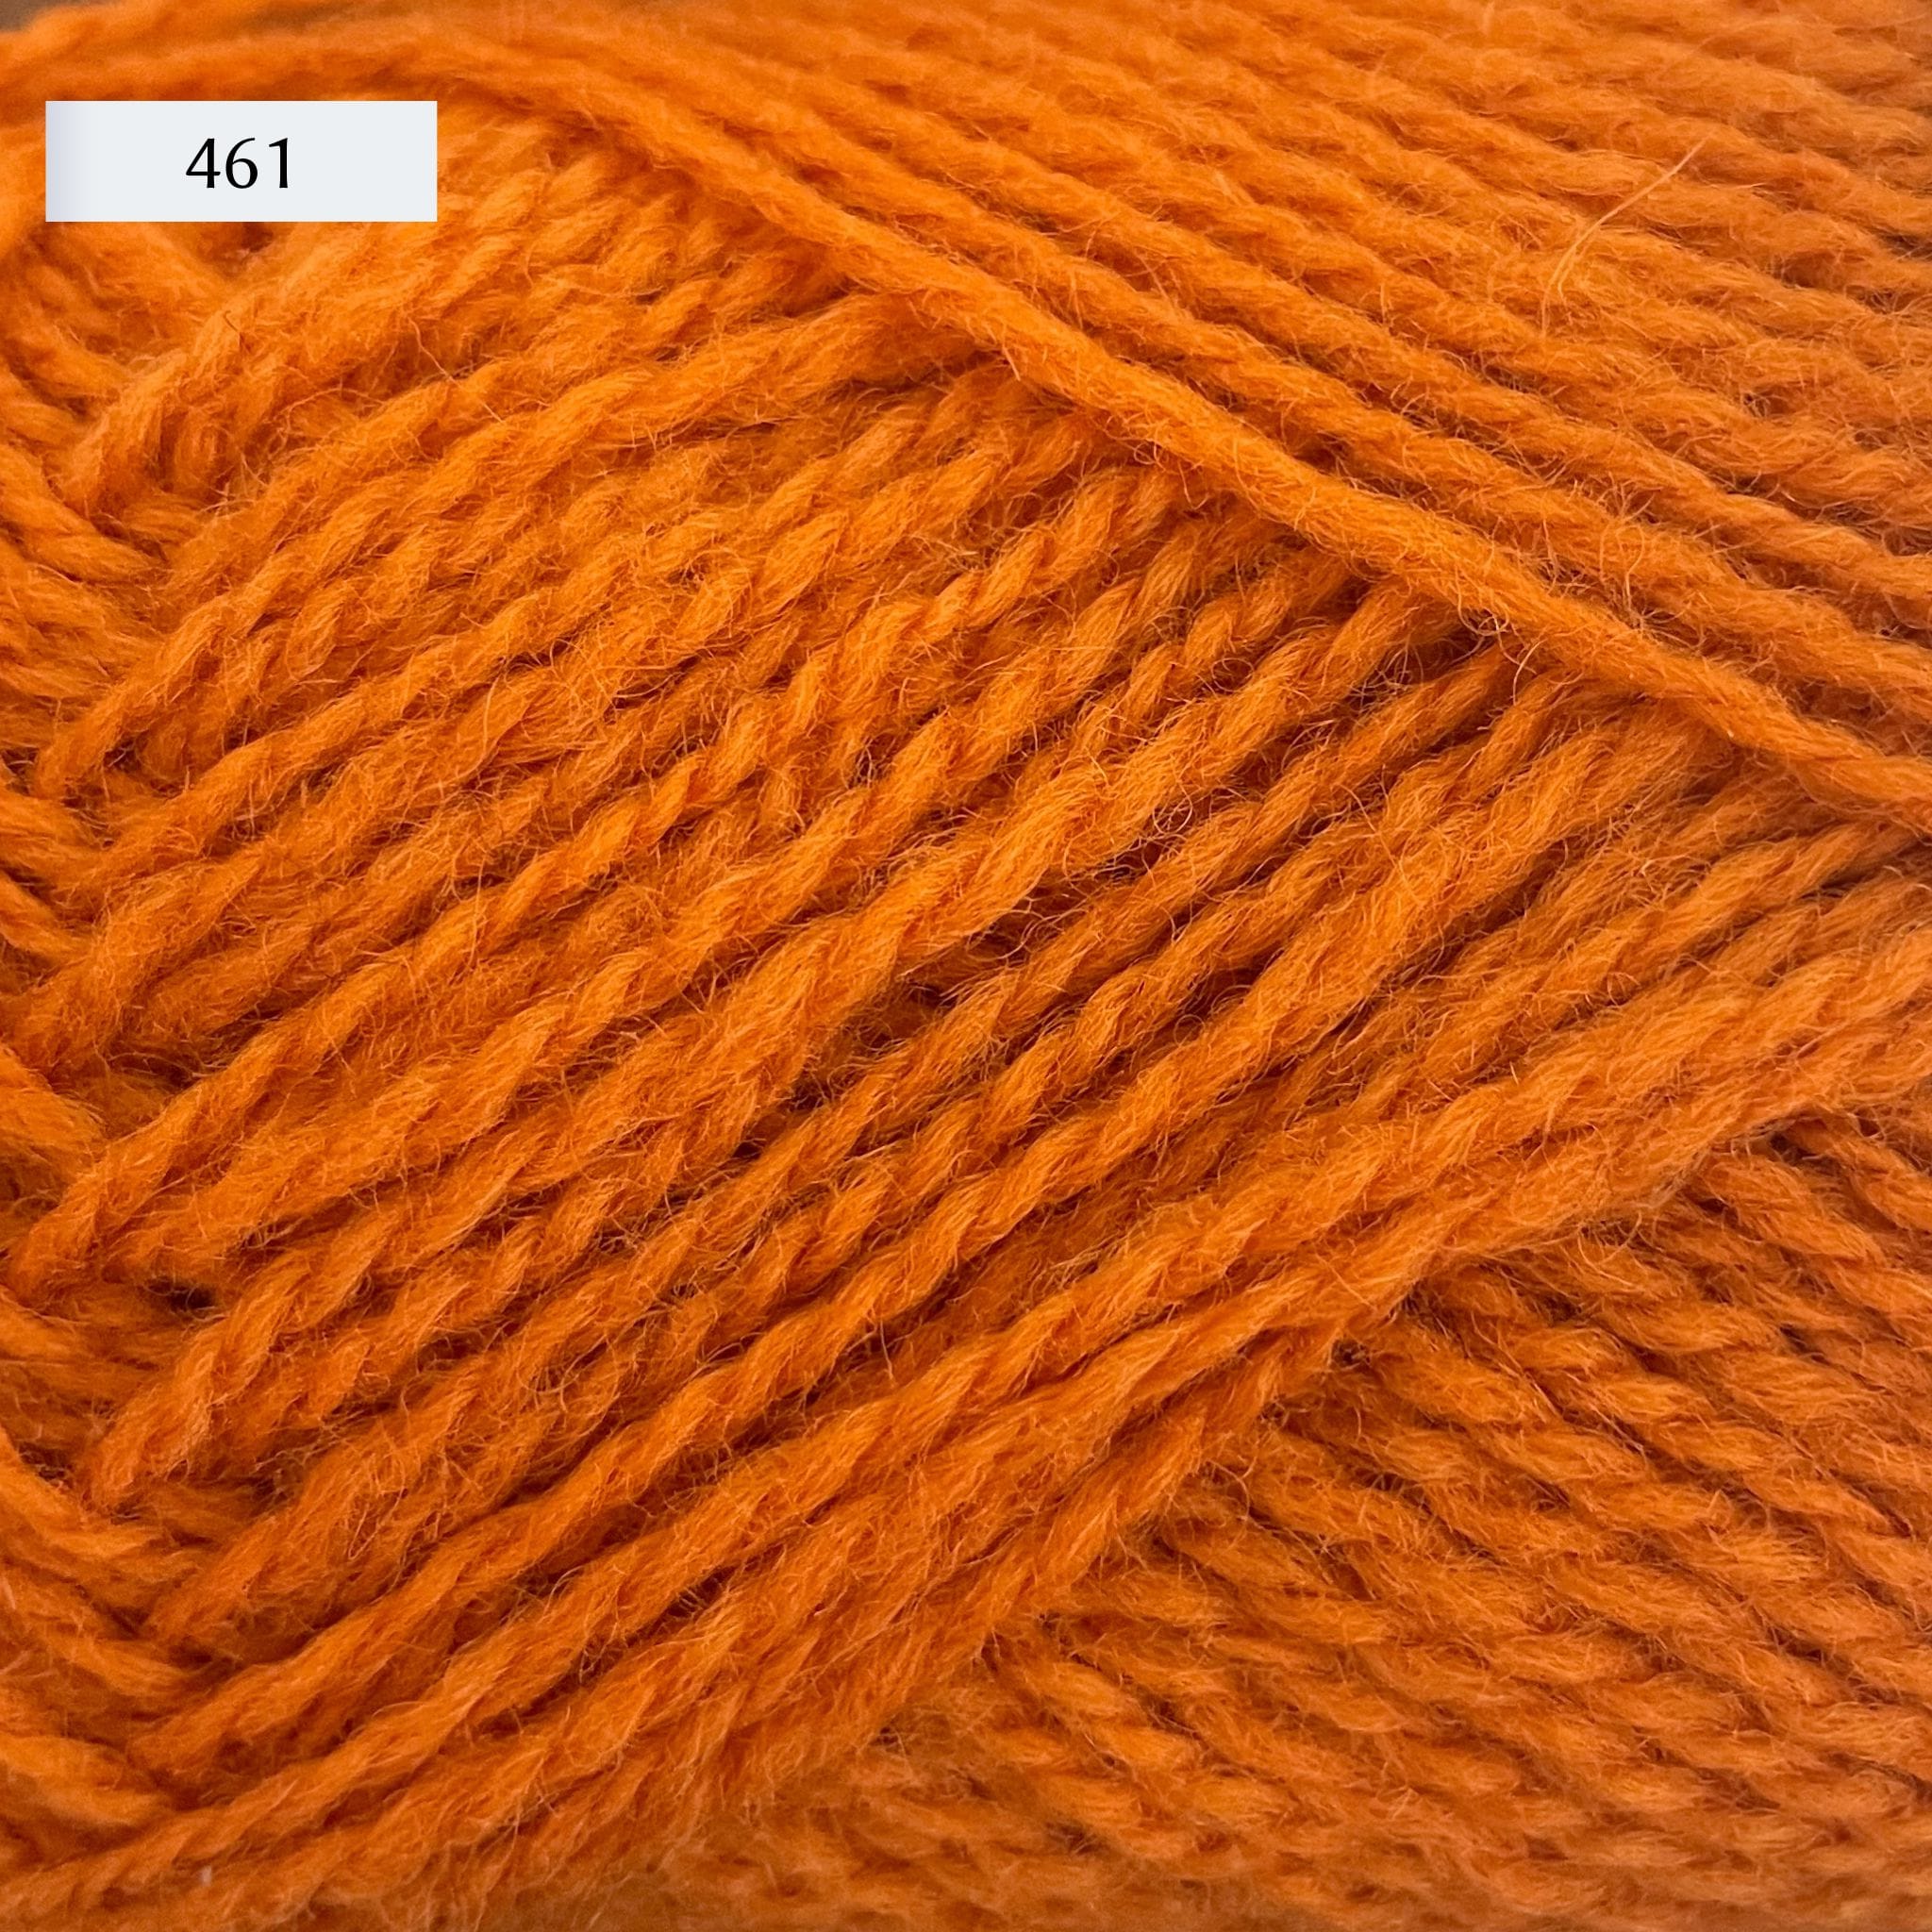 Rauma Finullgarn, a fingering/sport weight yarn, in color 461, a bright orange